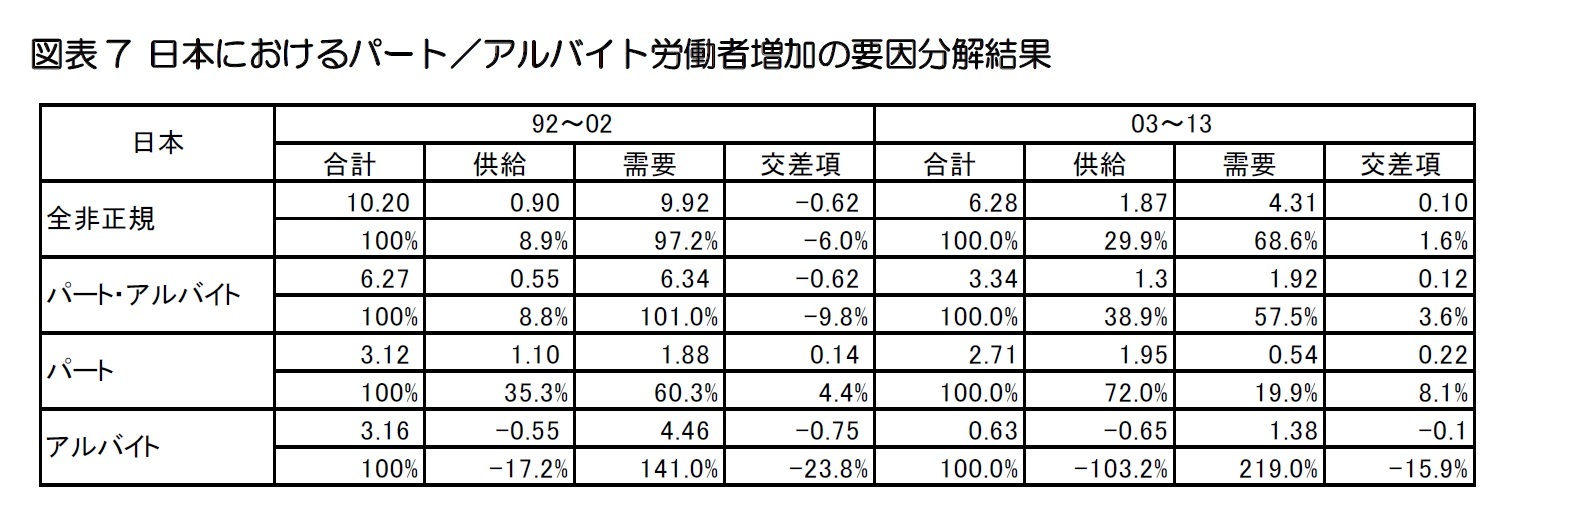 図表7 日本におけるパート／アルバイト労働者増加の要因分解結果